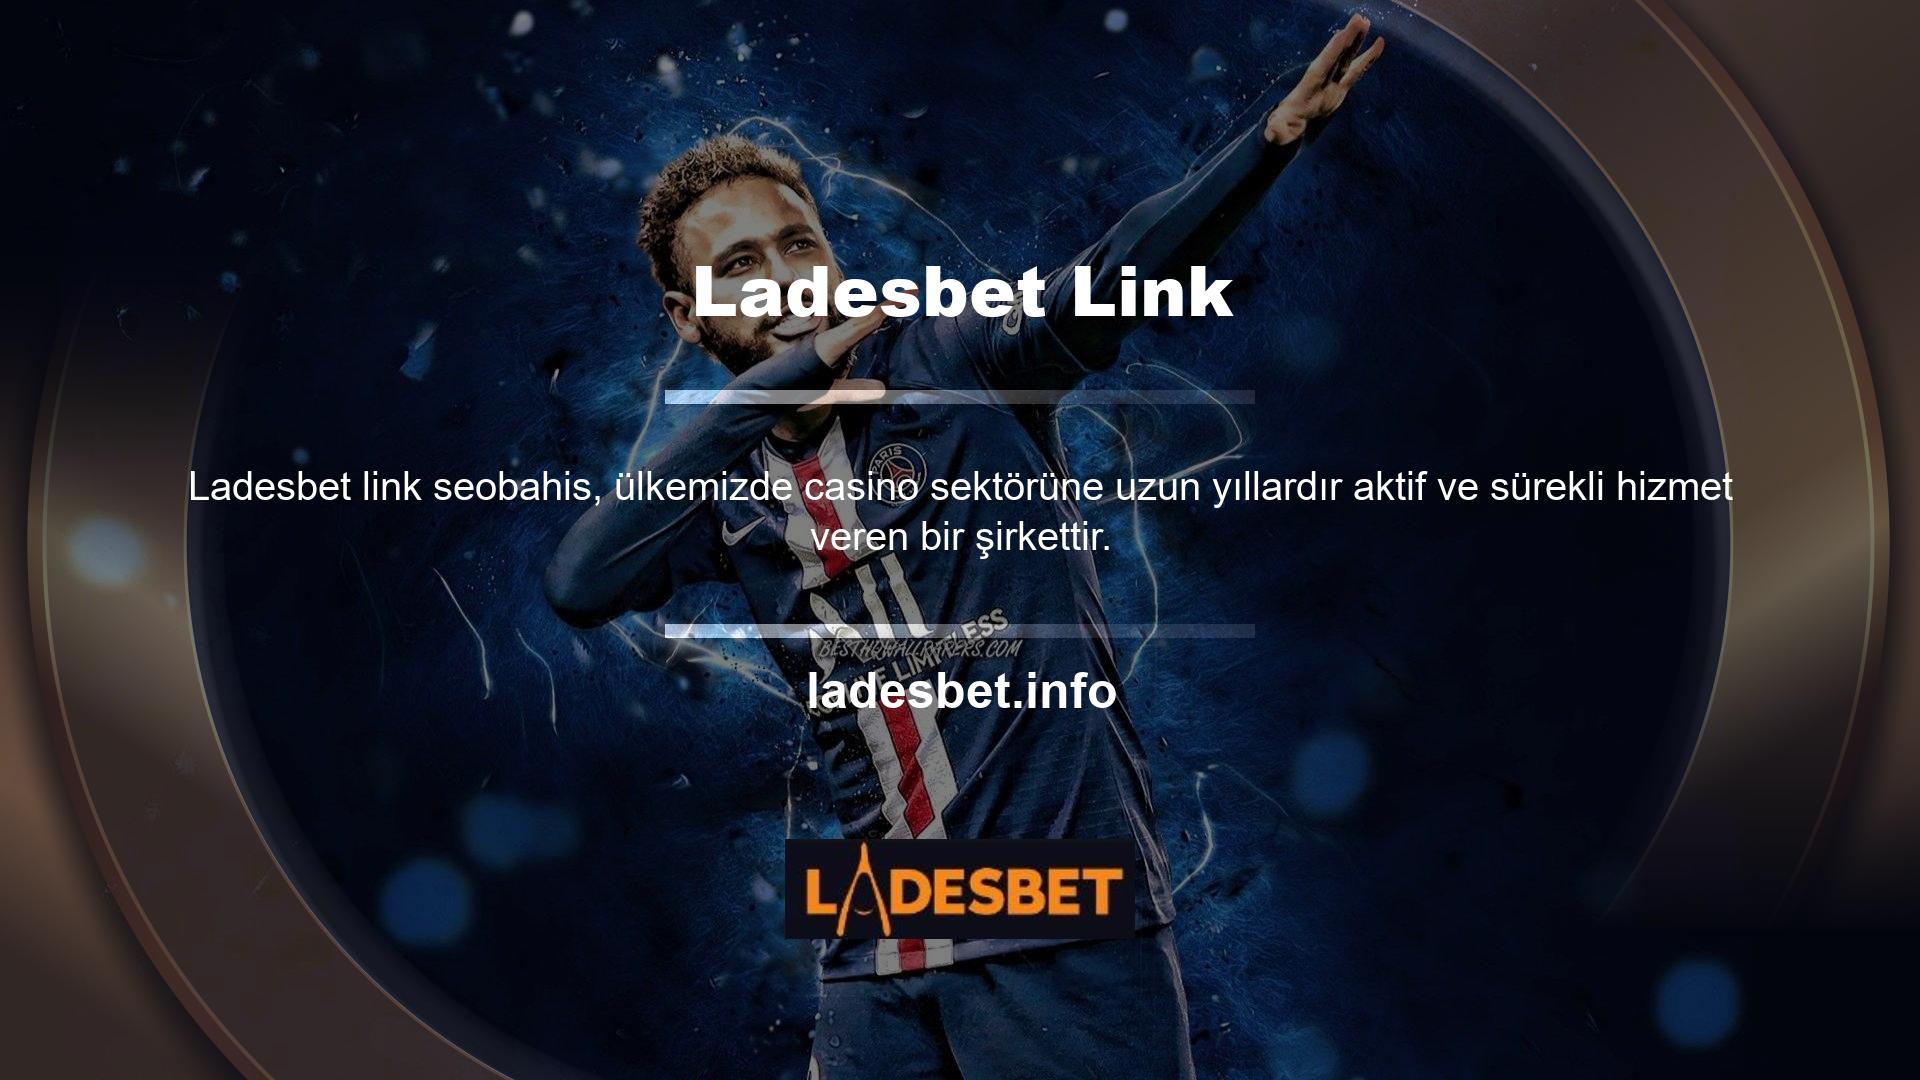 Ladesbet web sitesi yüzbinlerce memnun müşterisiyle profesyonel oyun ve casino hizmetleri sunmaktadır